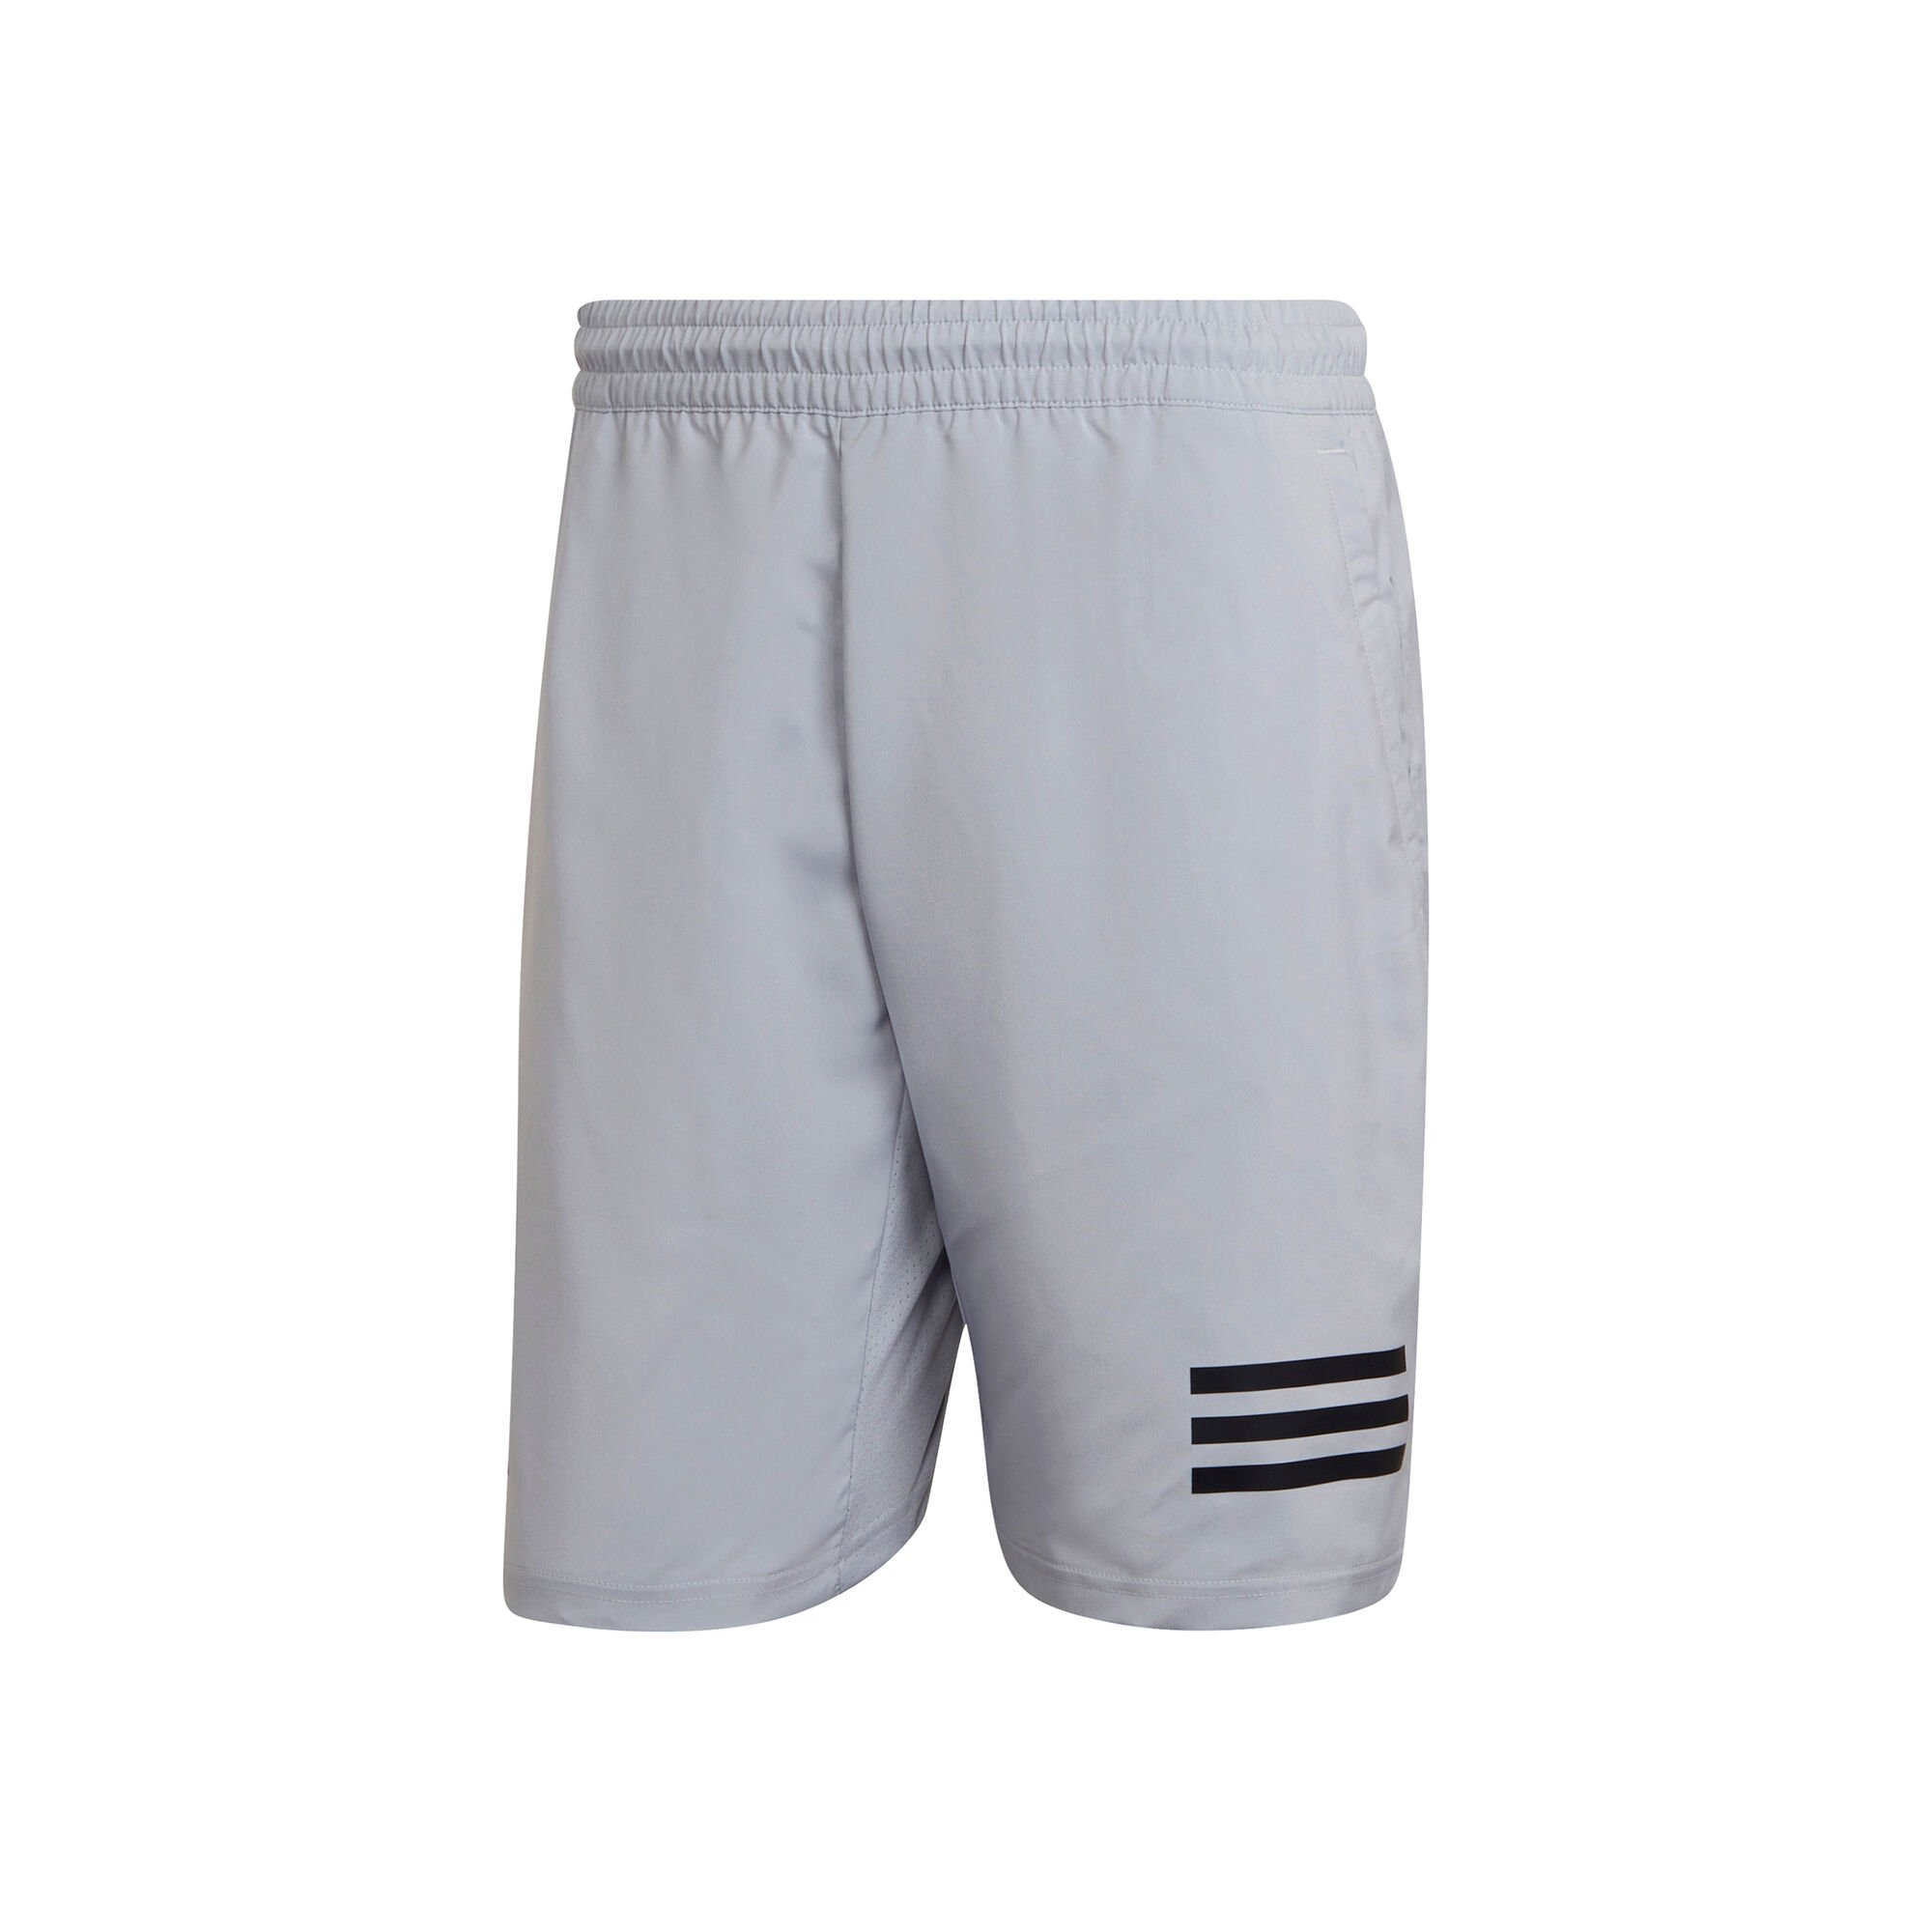 adidas Club 3 Stripes Shorts Herren - Grau online kaufen | Tennis-Point